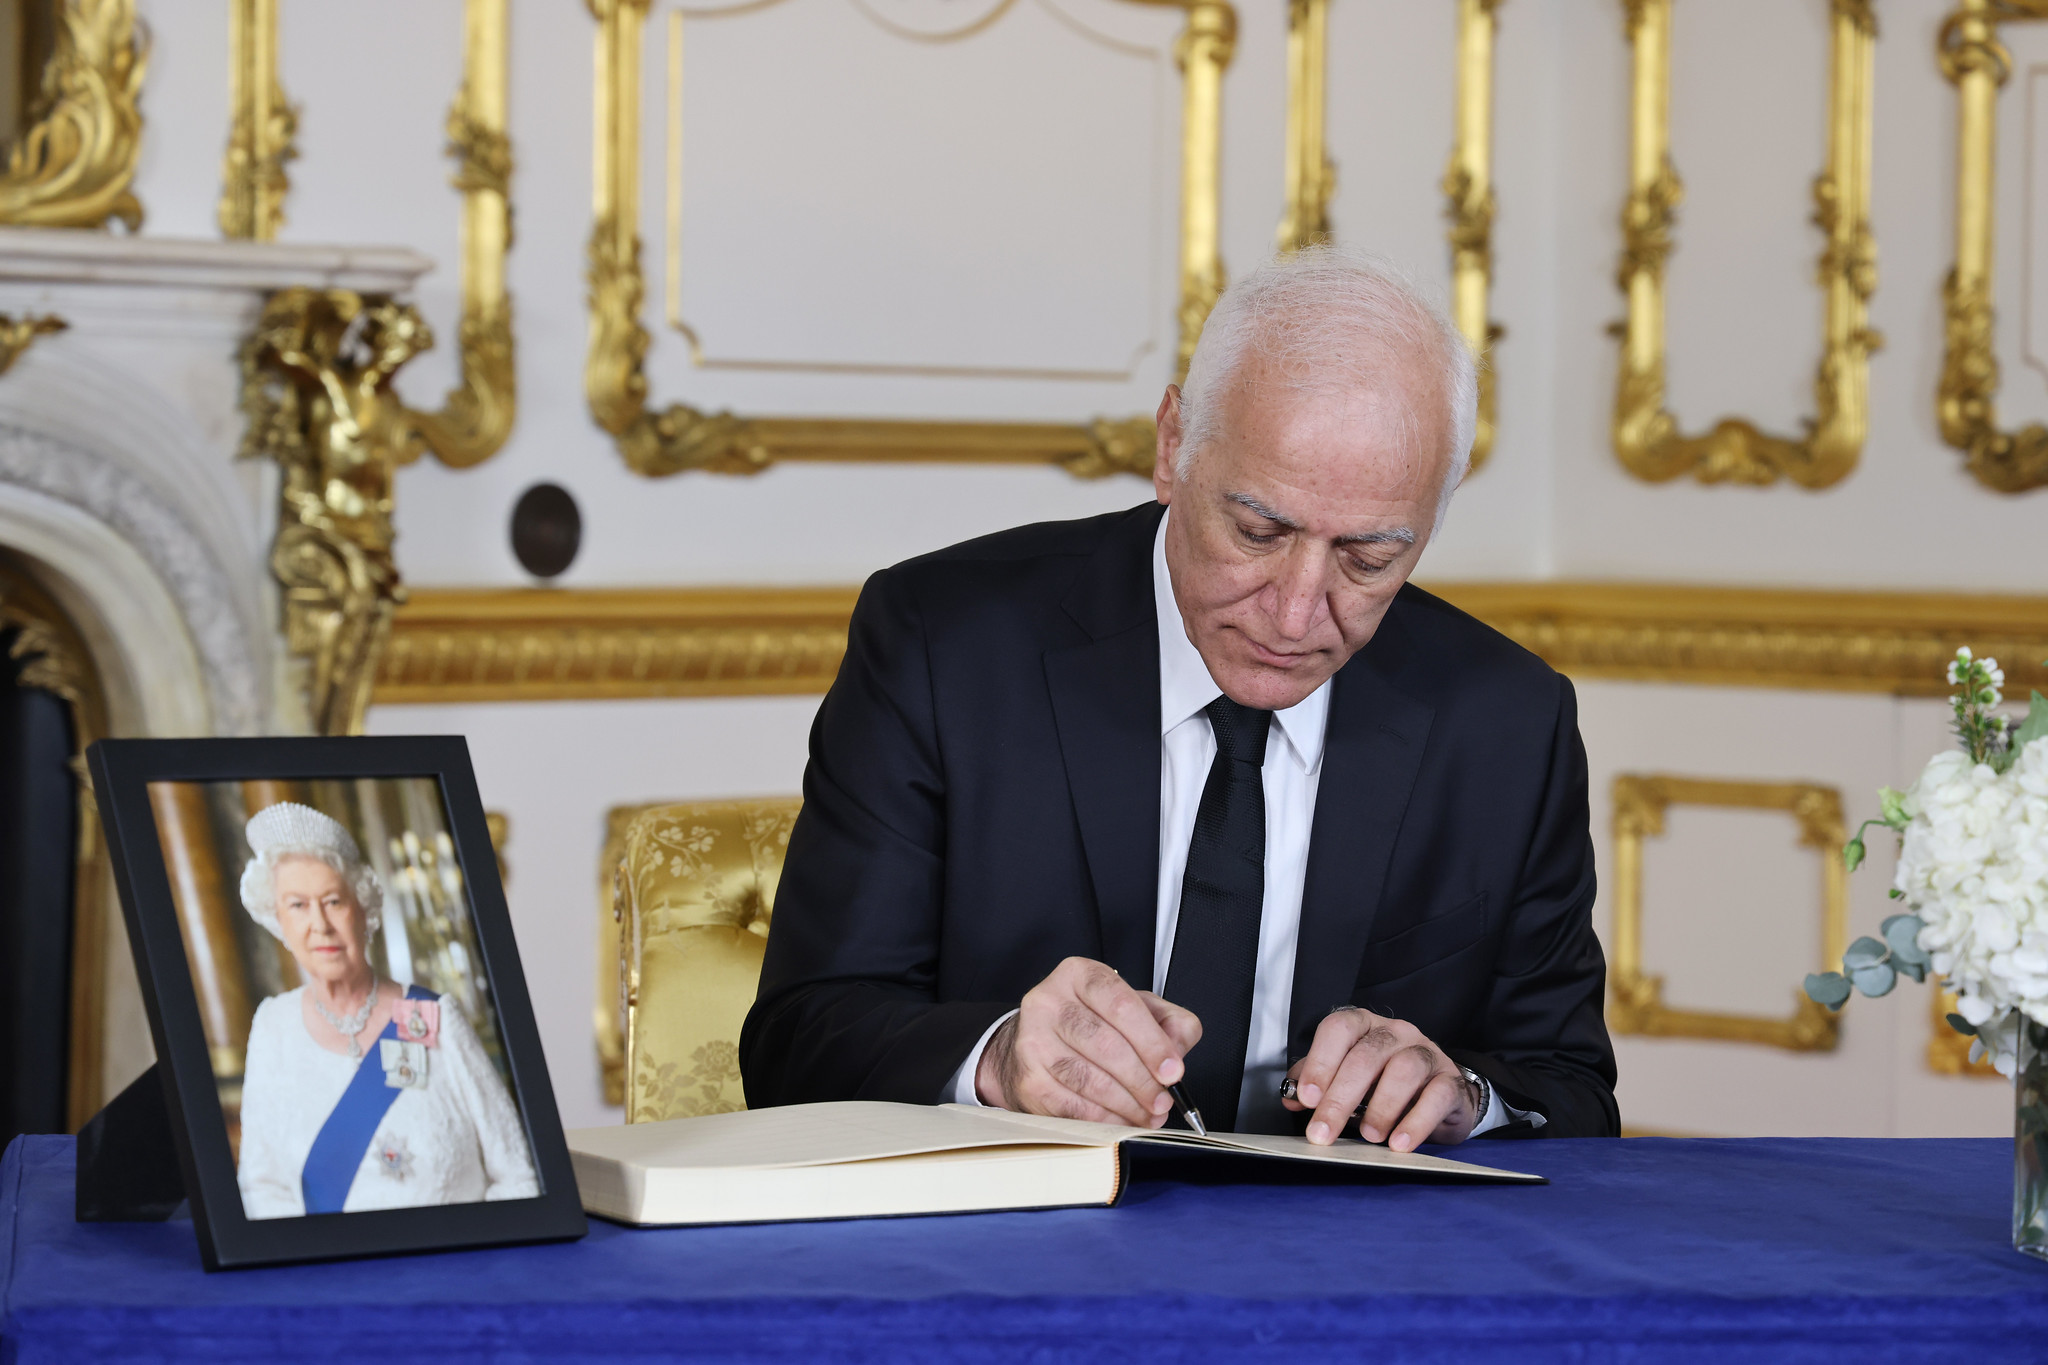 ՀՀ նախագահը ներկա է գտնվել Եղիսաբեթ թագուհու հուղարկավորության պետական արարողությանը, գրառում կատարել սգո մատյանում